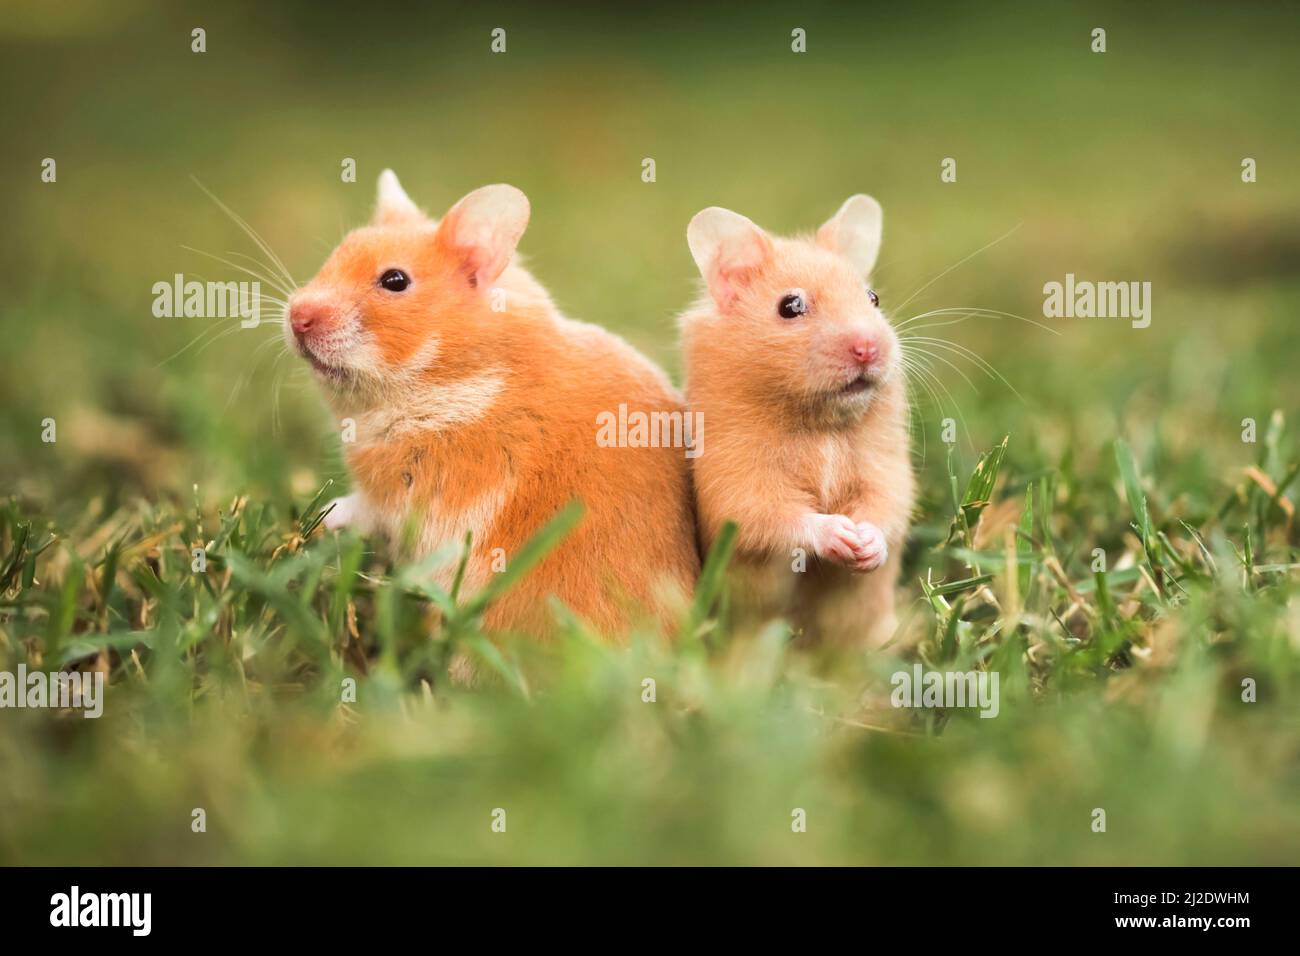 Hamster doré ou hamster de Syrie, (Mesocricetus auratus) sur la pelouse Banque D'Images